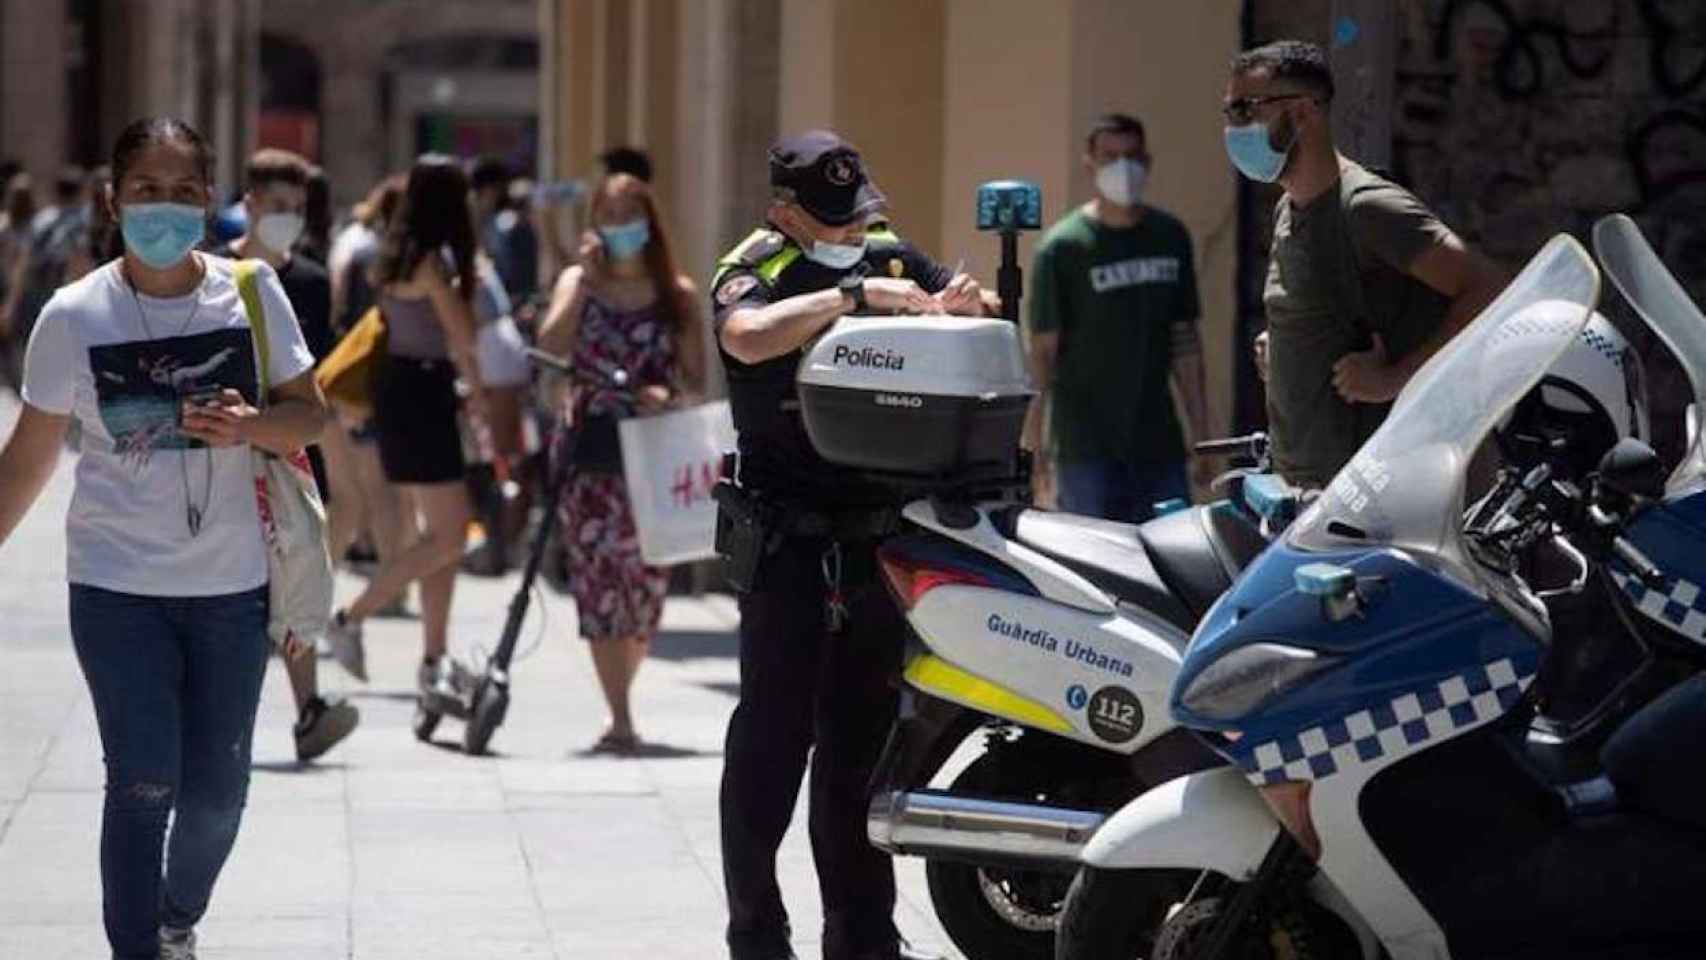 Un policía multa a un ciclista por una infracción cometida y le advierte también de la obligatoriedad de llevar mascarilla cuando se viaja / EFE - MARTA PÉREZ